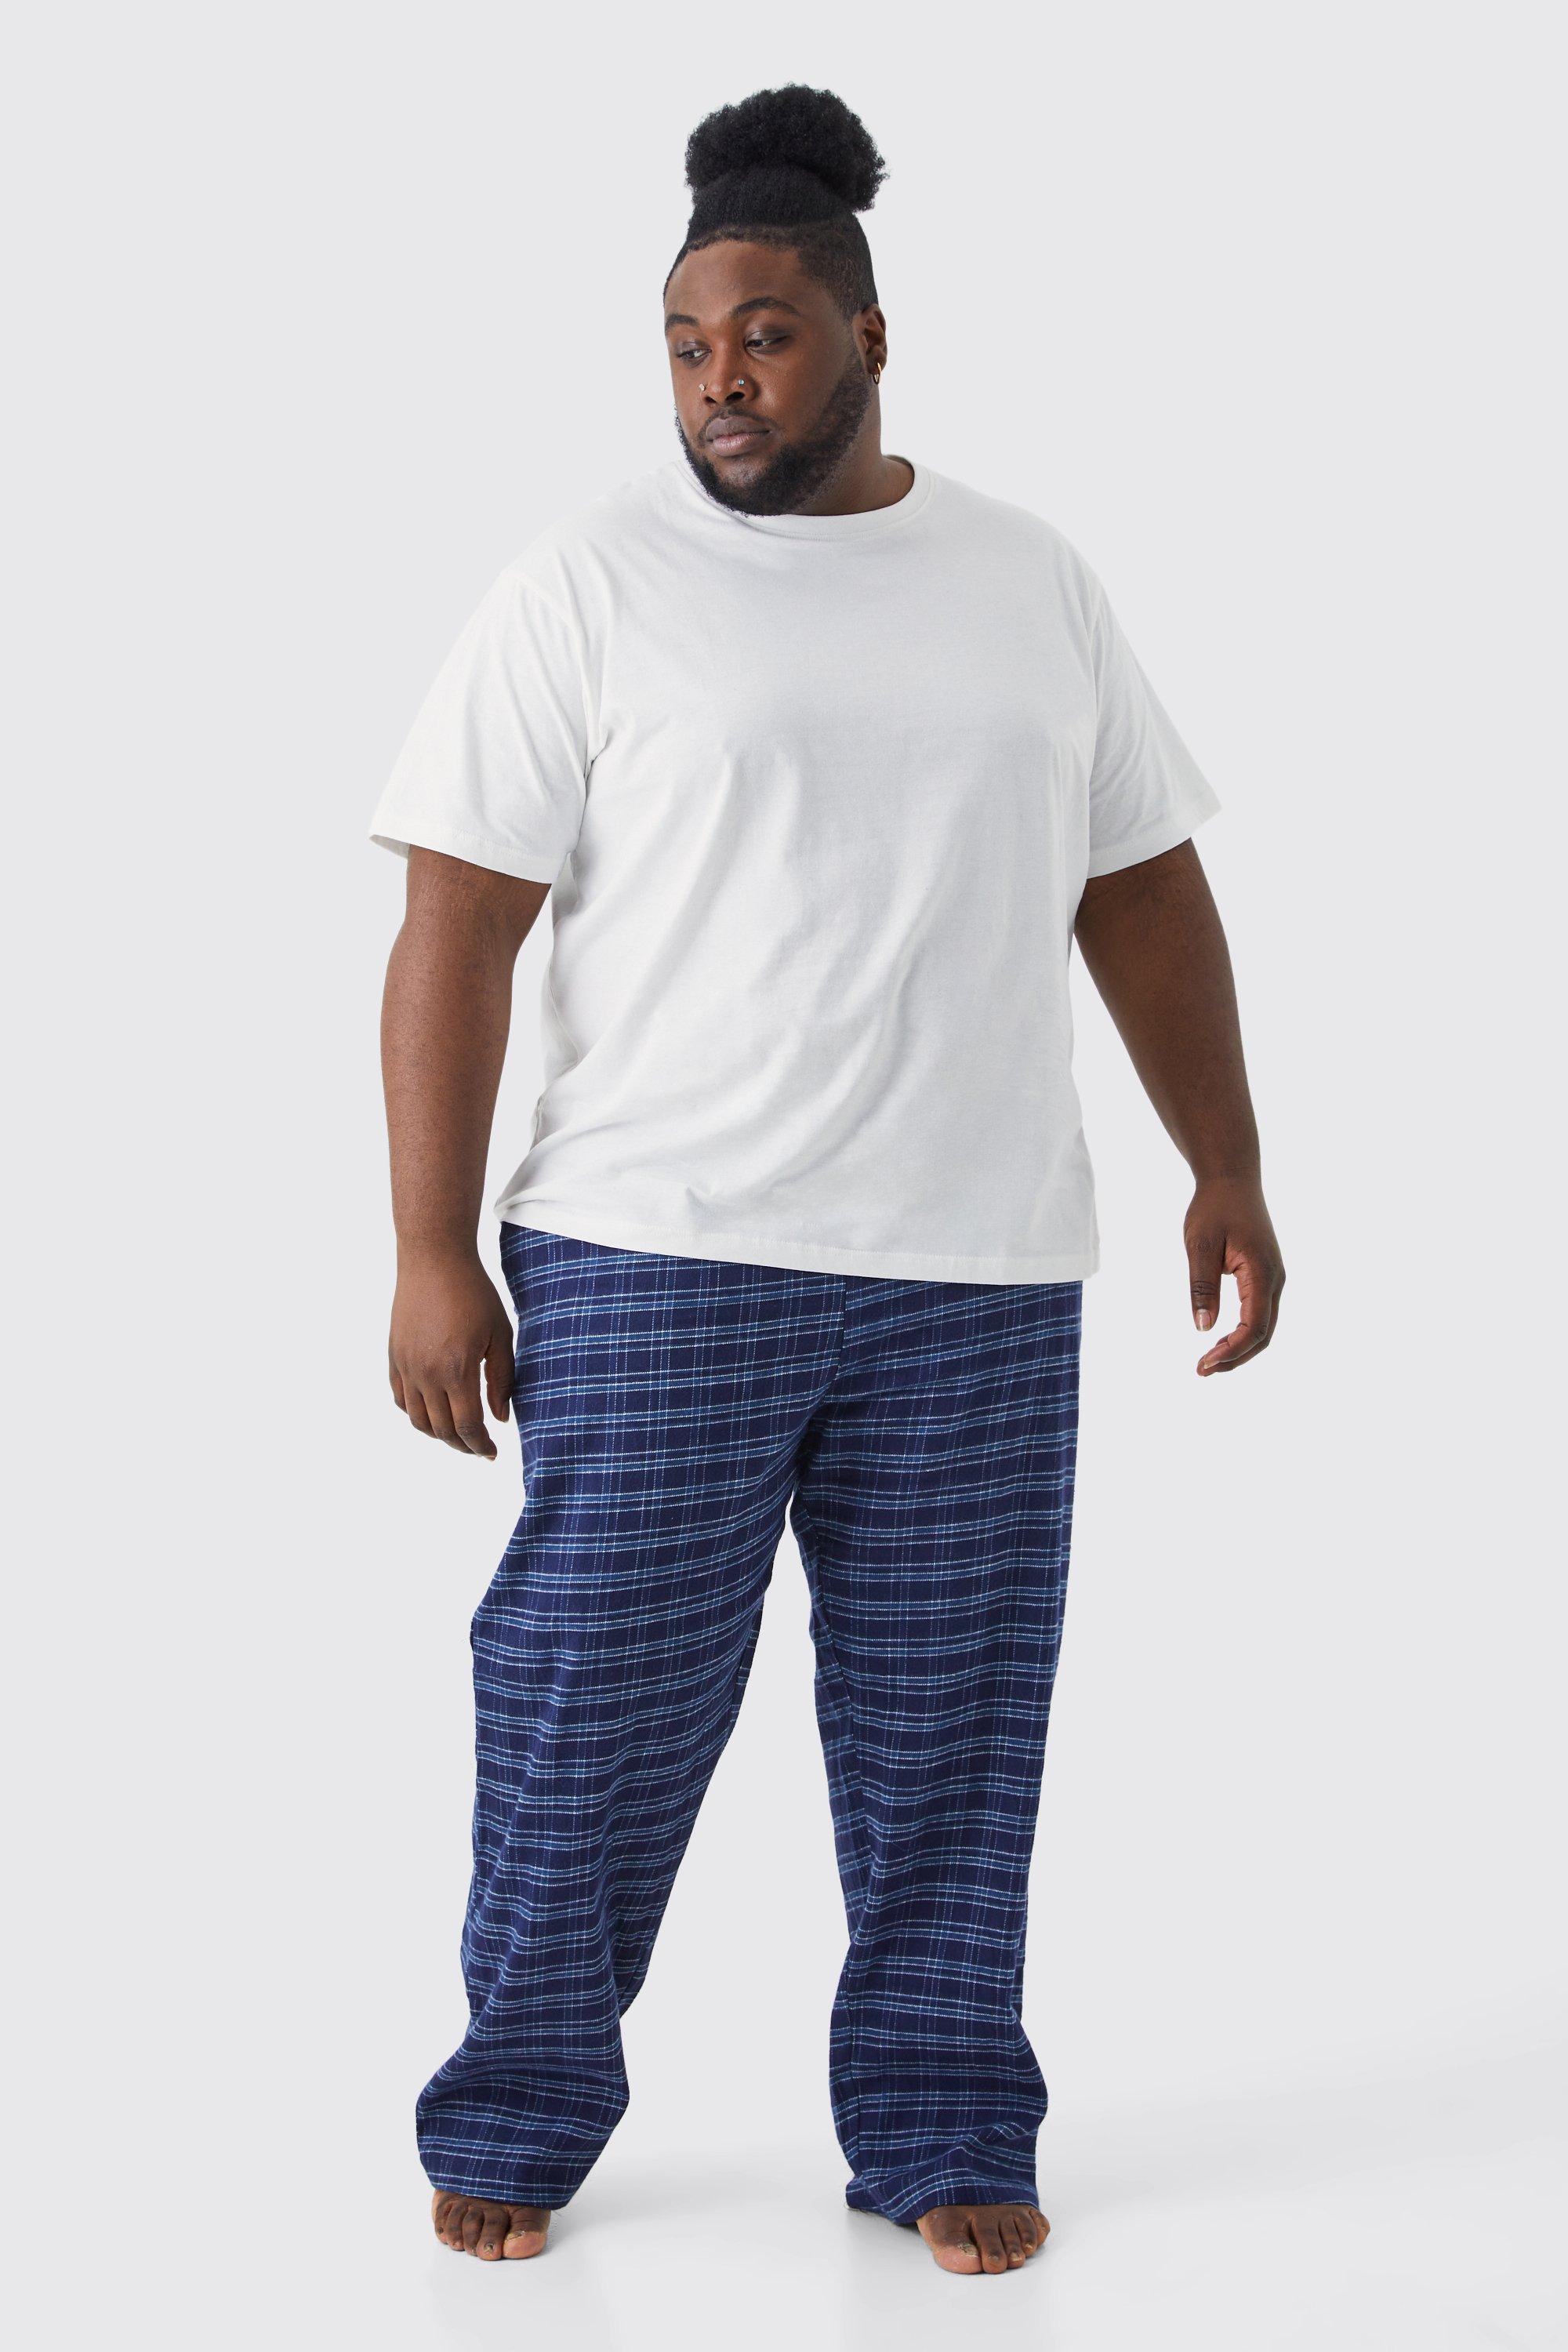 grande taille - pyjama avec t-shirt et bas à carreaux homme - bleu - xxxl, bleu